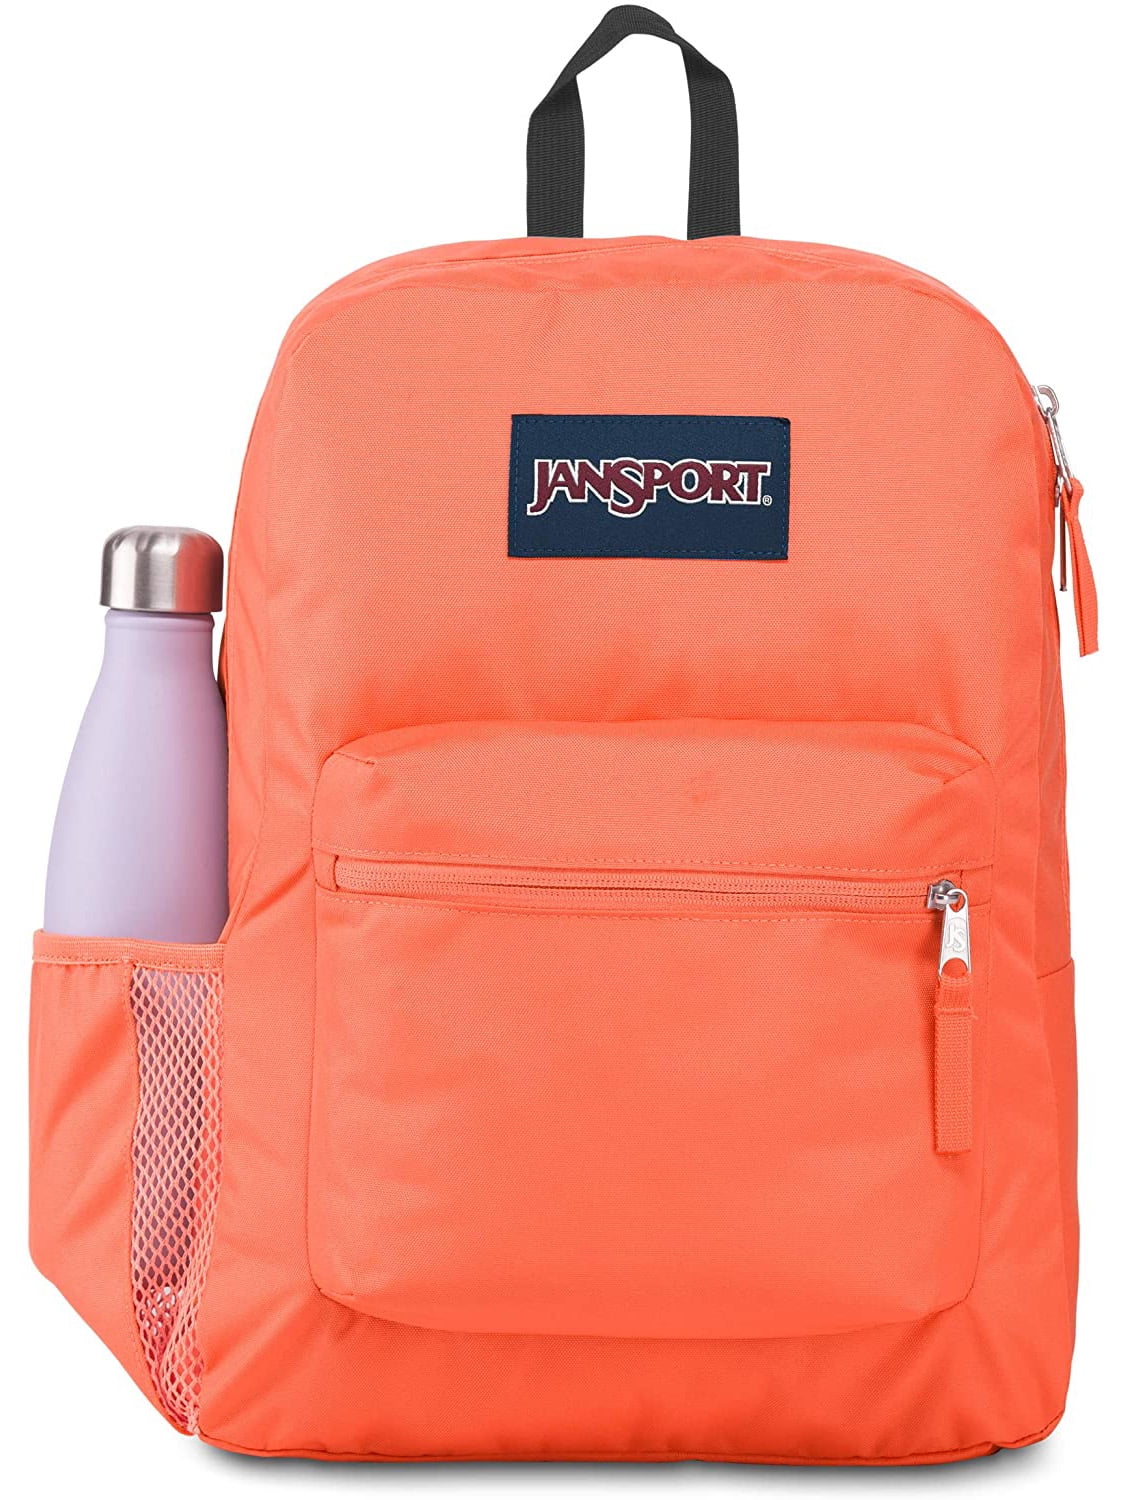 JANSPORT Mesh Backpack NEW 3 Colors School Gym Travel Book Bag Jan Sport 